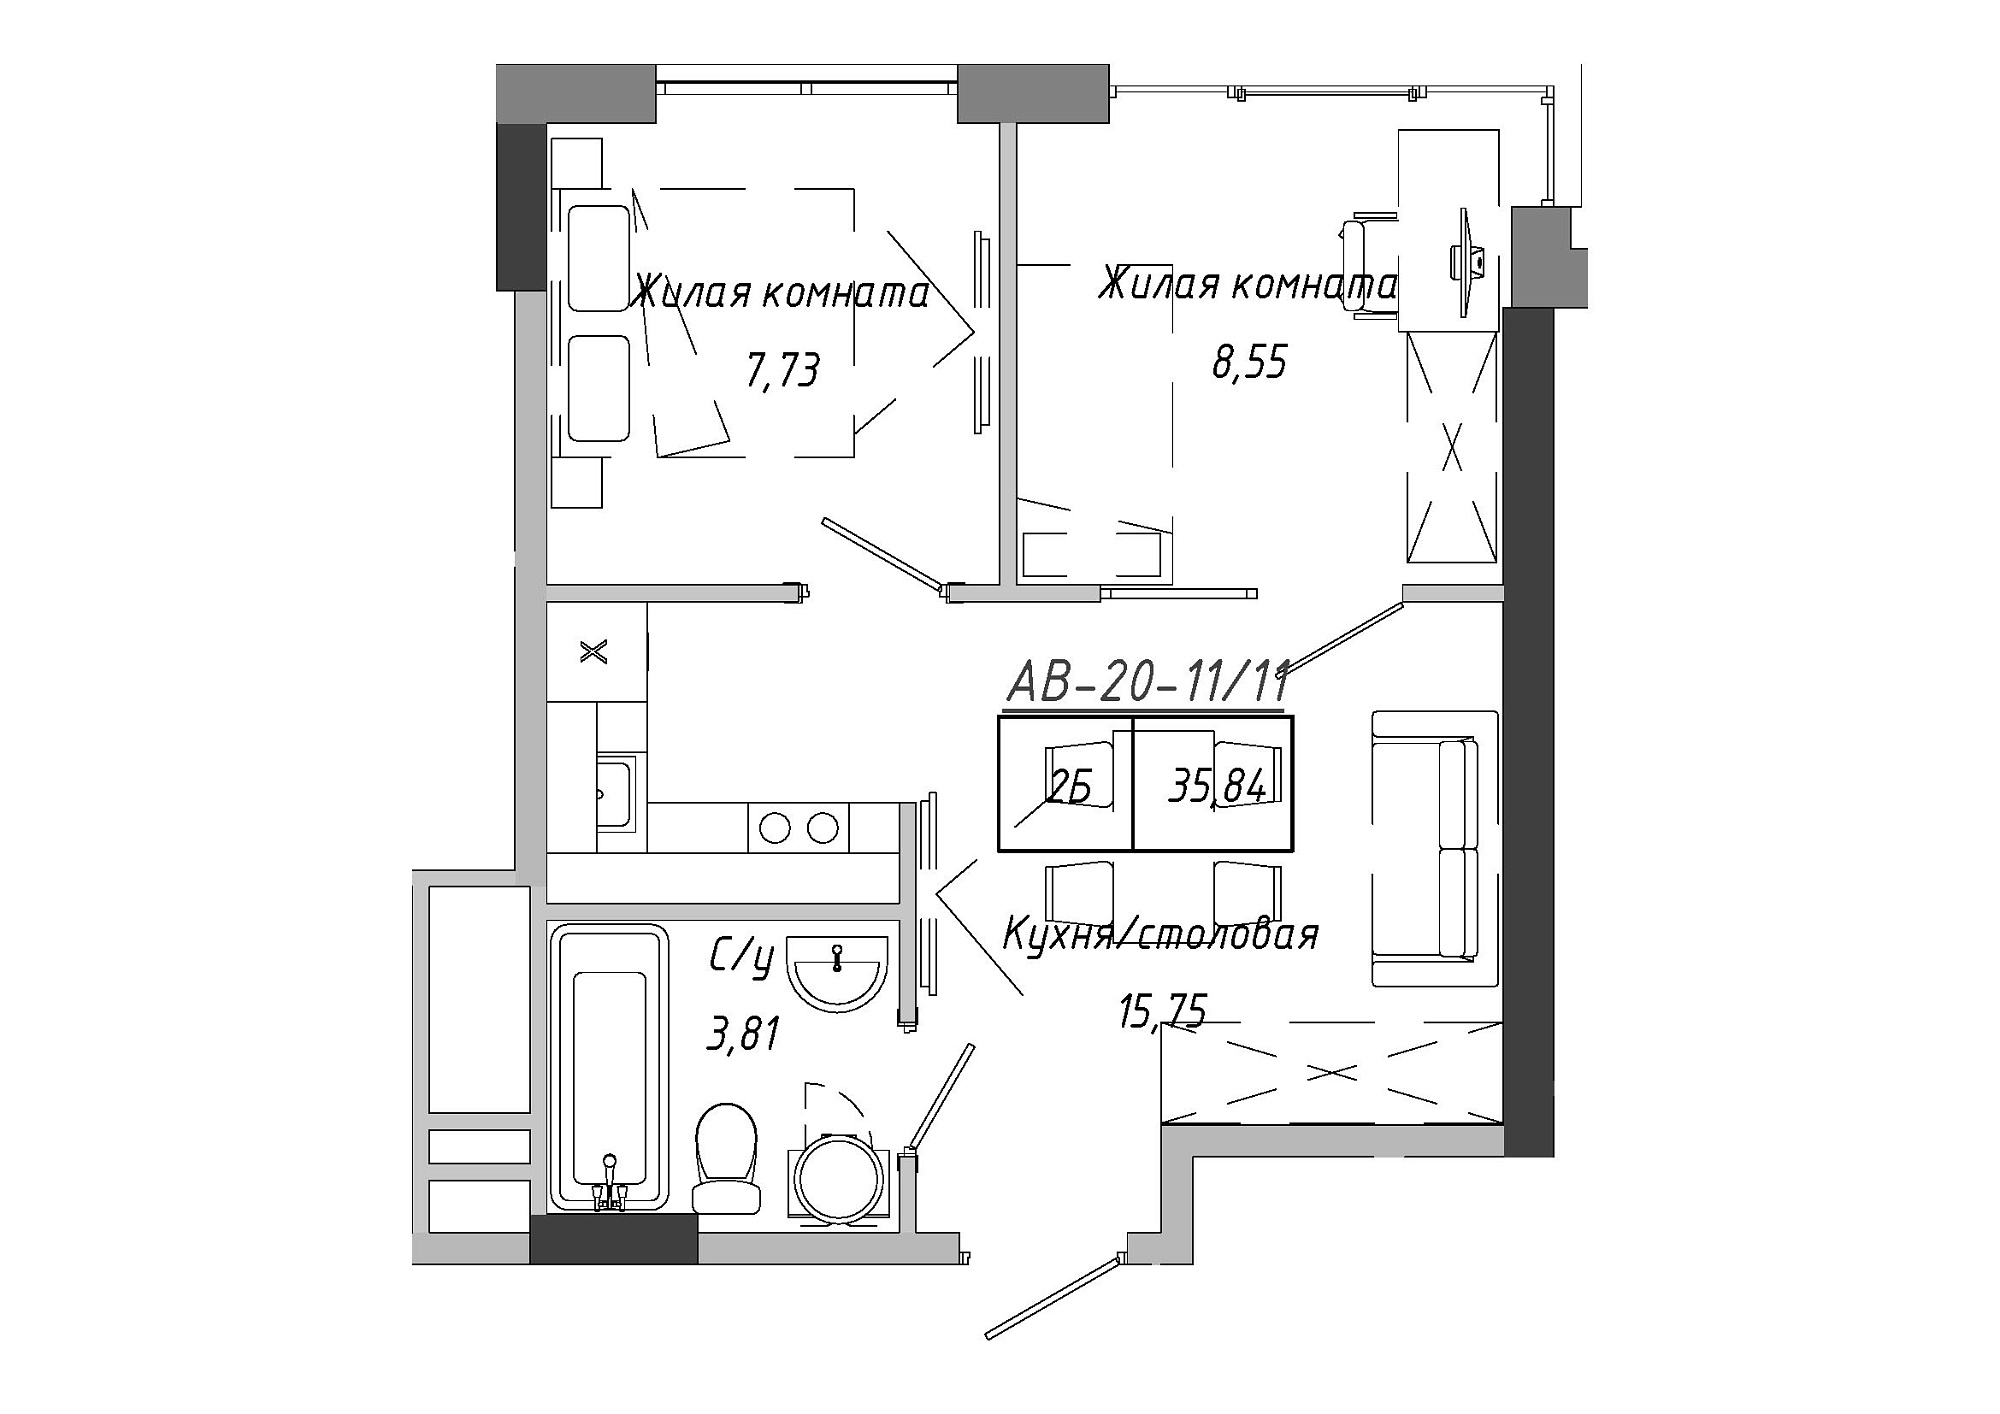 Планування 2-к квартира площею 36.12м2, AB-20-11/00011.